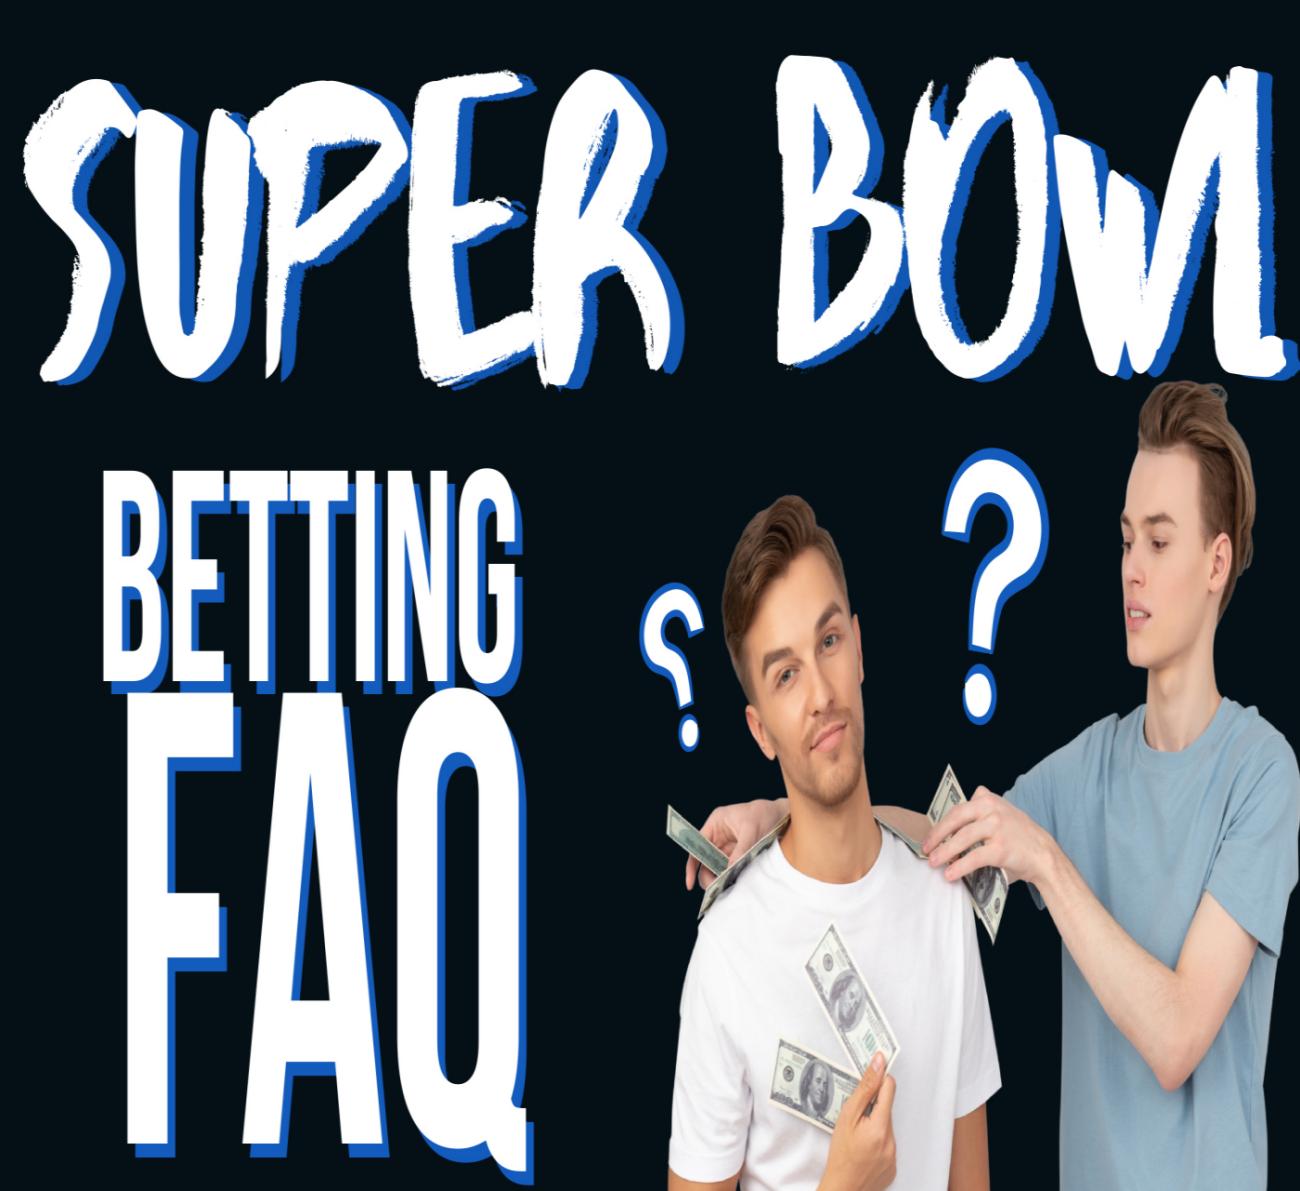 Super Bowl betting FAQ